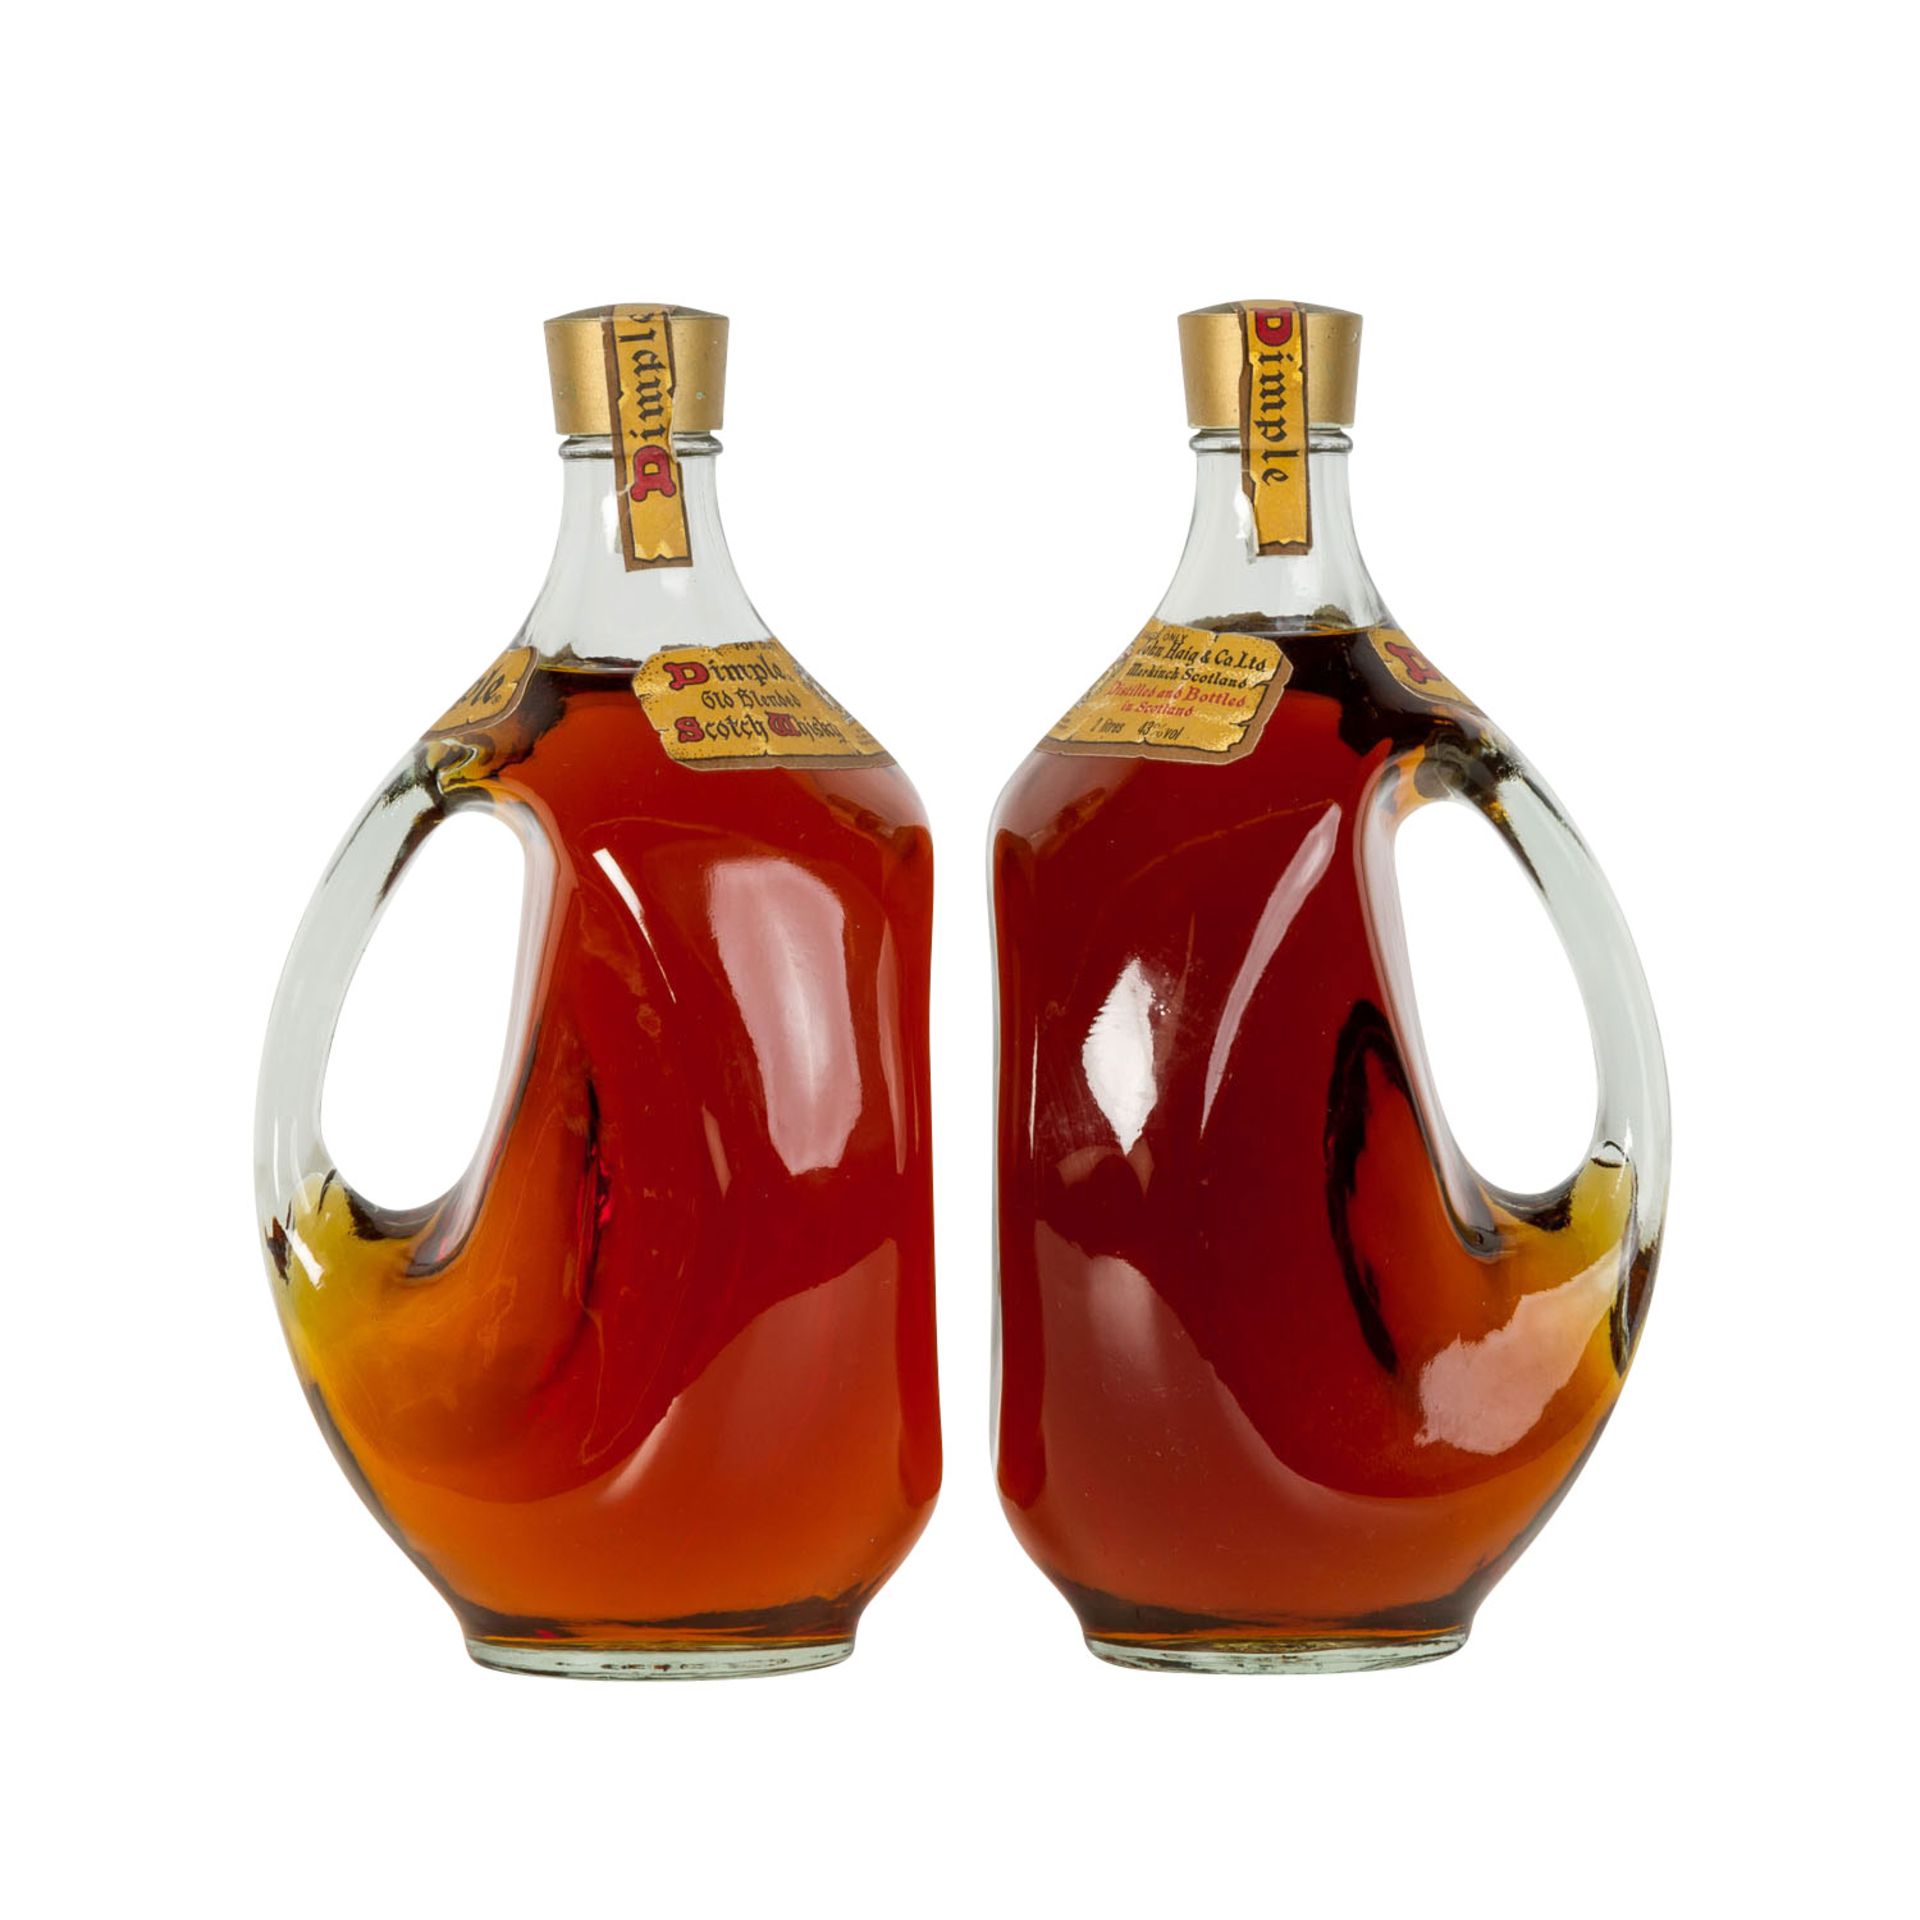 2 Flaschen Blended Scotch Whisky DIMPLE,Region: Lowlands, 43% Vol., 2000ml, Füllstand im - Bild 3 aus 3